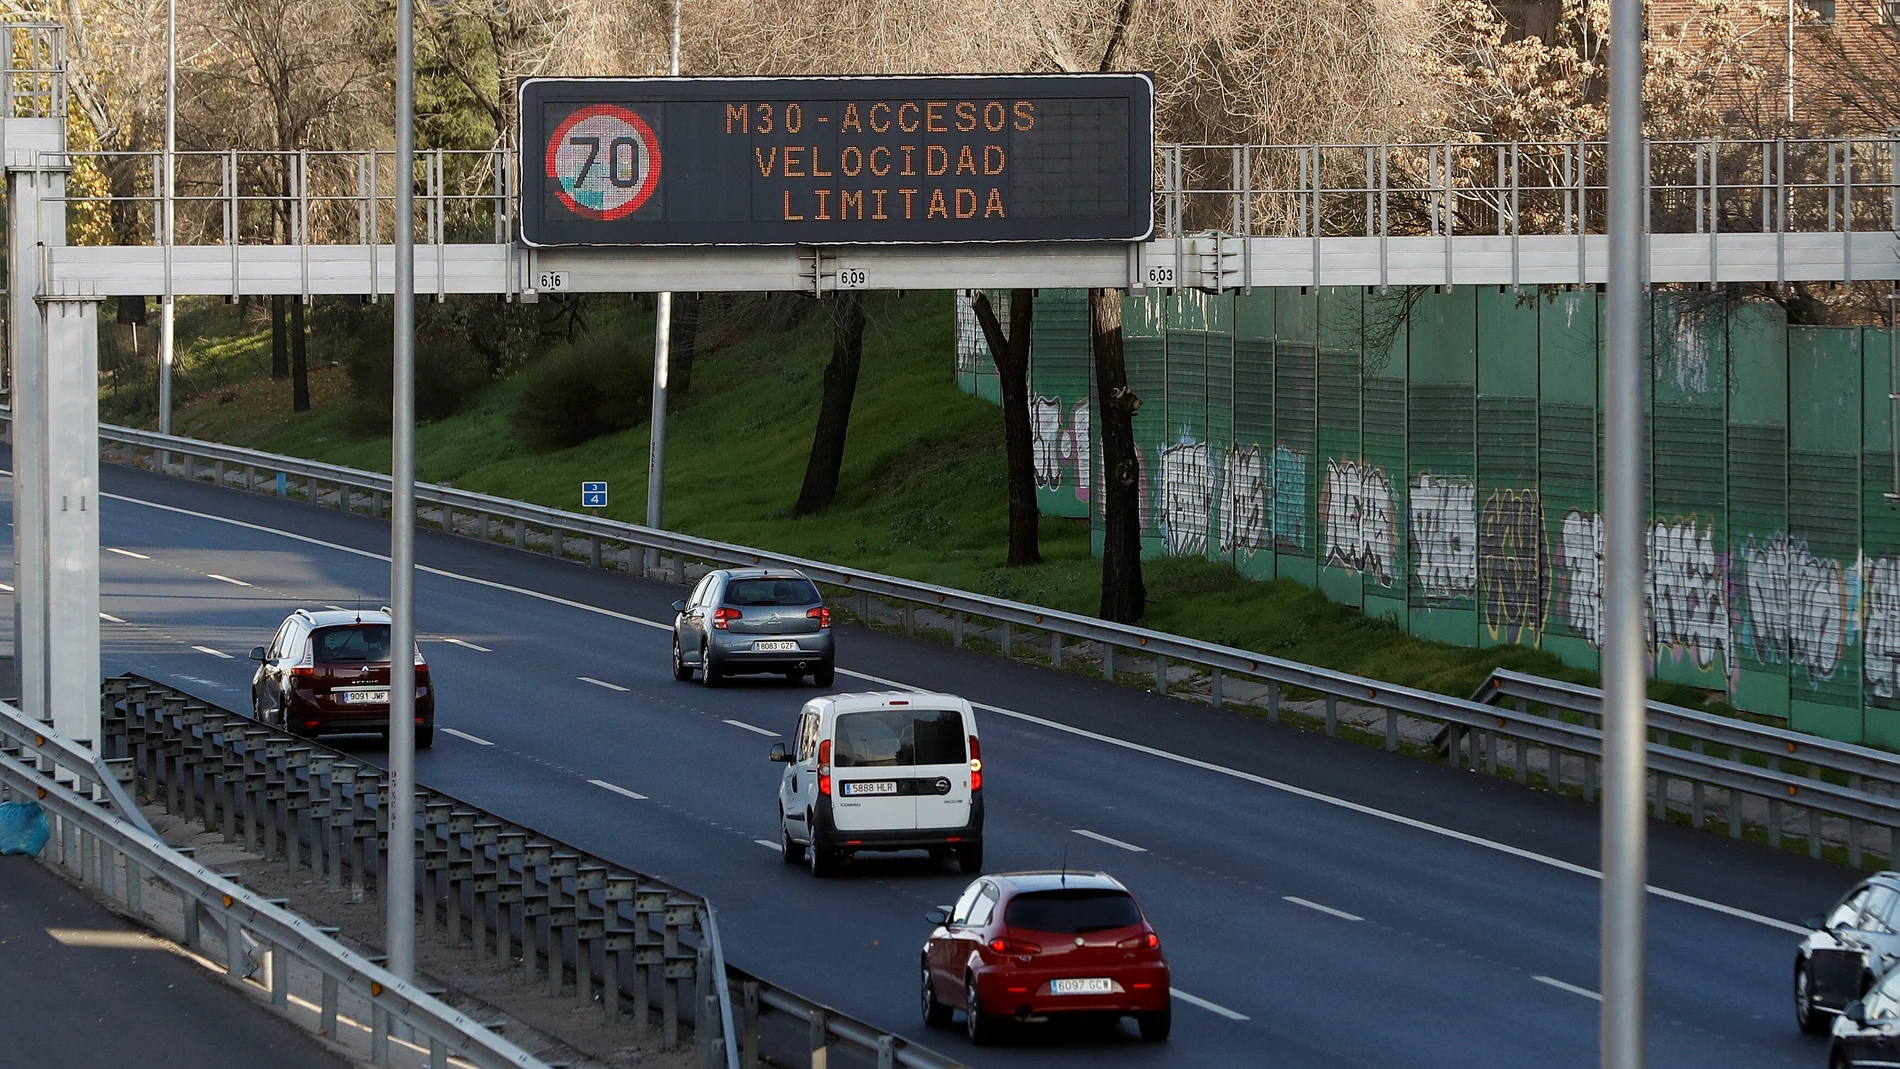 Madrid activa el protocolo anticontaminación y limita a 70 km la velocidad en la M-30 y sus accesos